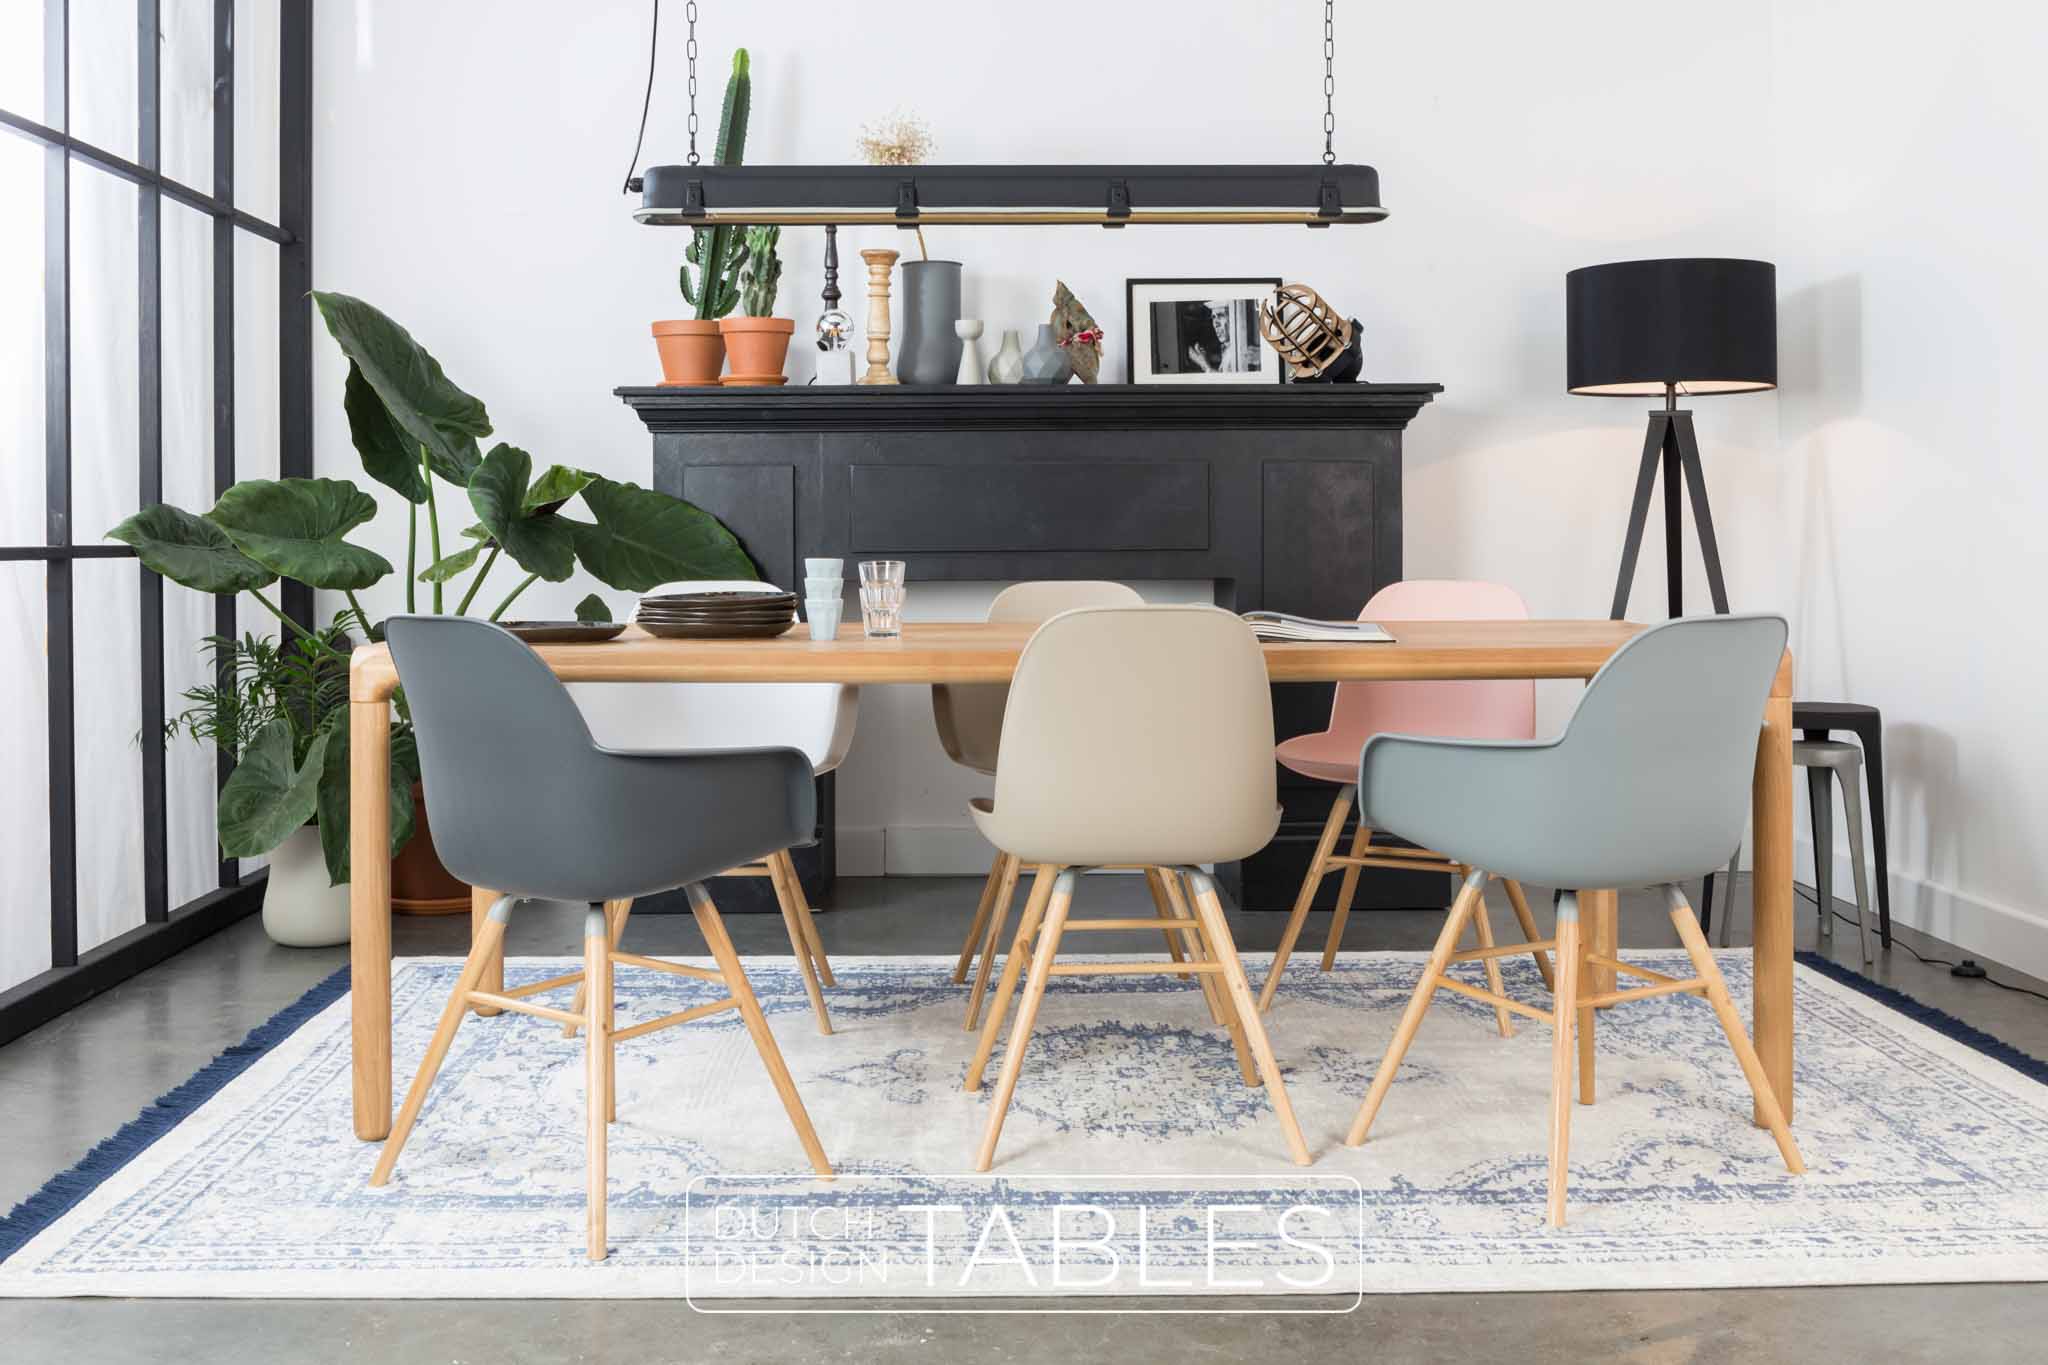 St Let op Stap Stoel Zuiver Albert Kuip armchair | 6 kleuren | gratis verzending! – Dutch  Design Tables